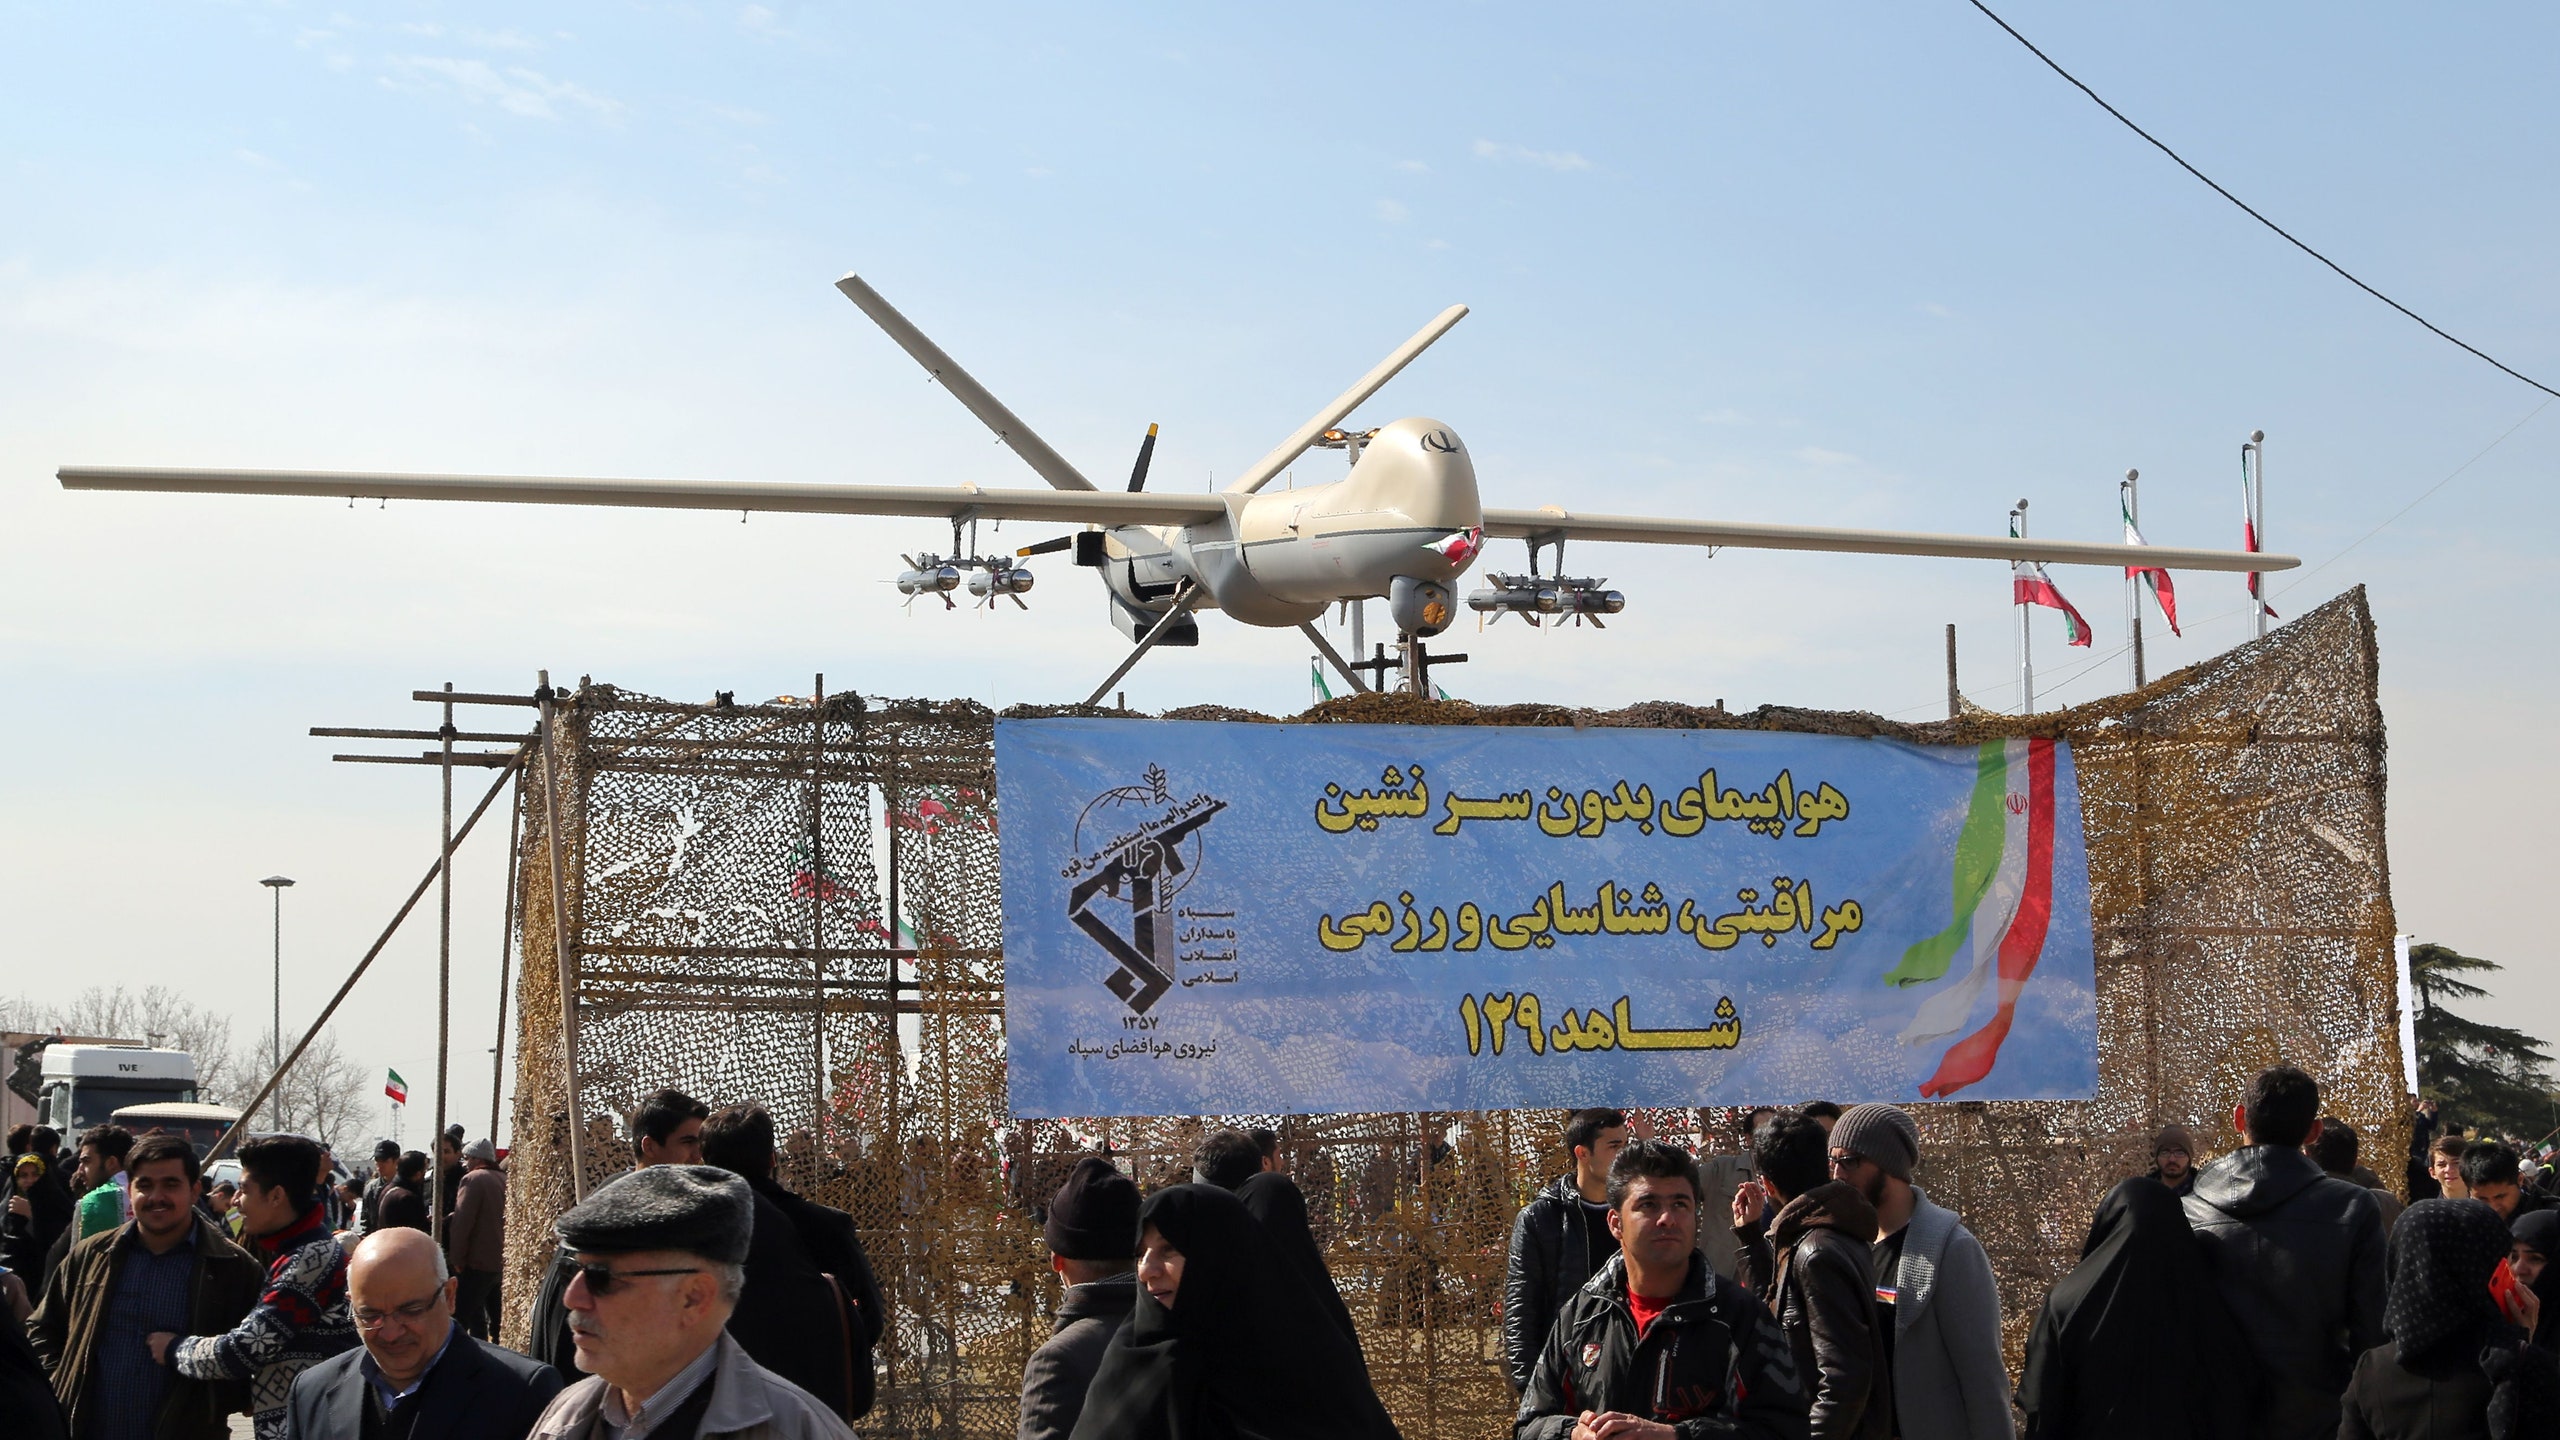 L'Iran ha fatto avere alla Russia droni a lungo raggio inviati su navi e aerei